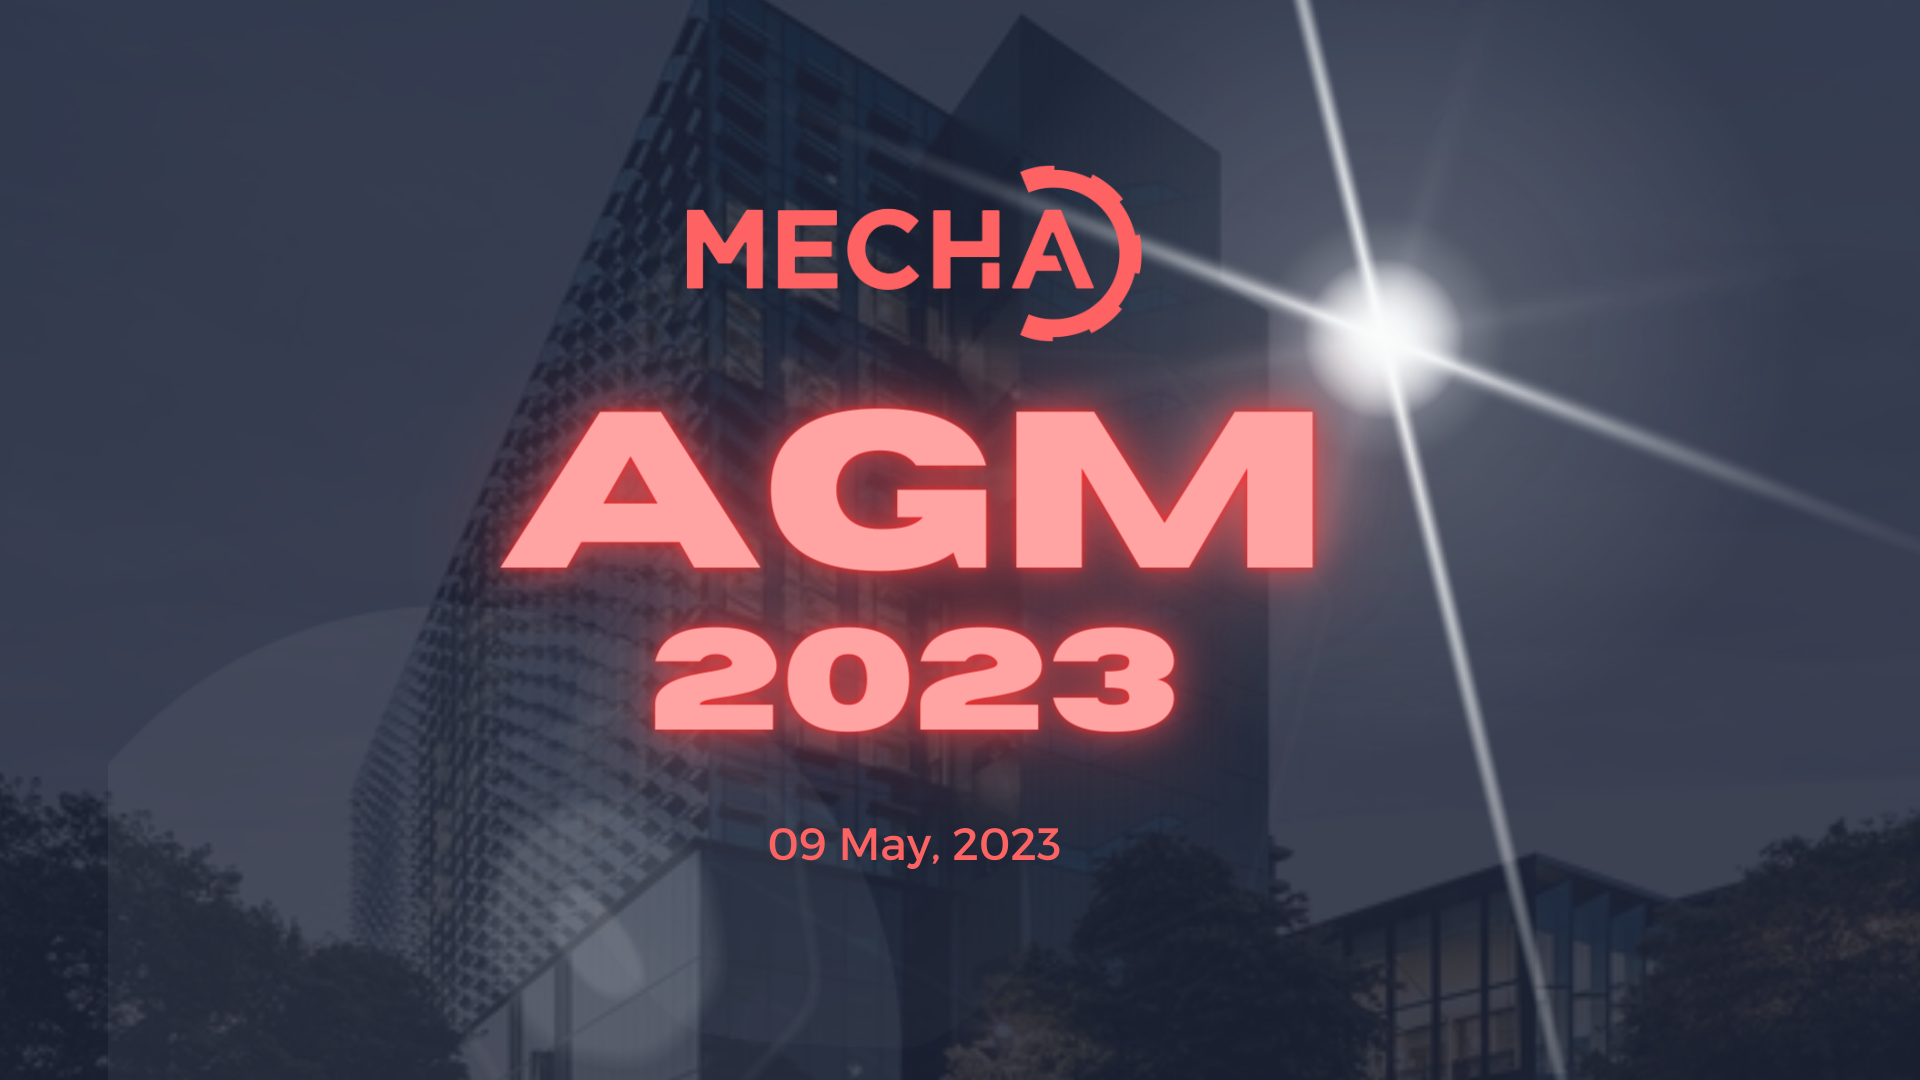 Annual general meeting 2023 - Leech Meeting Room